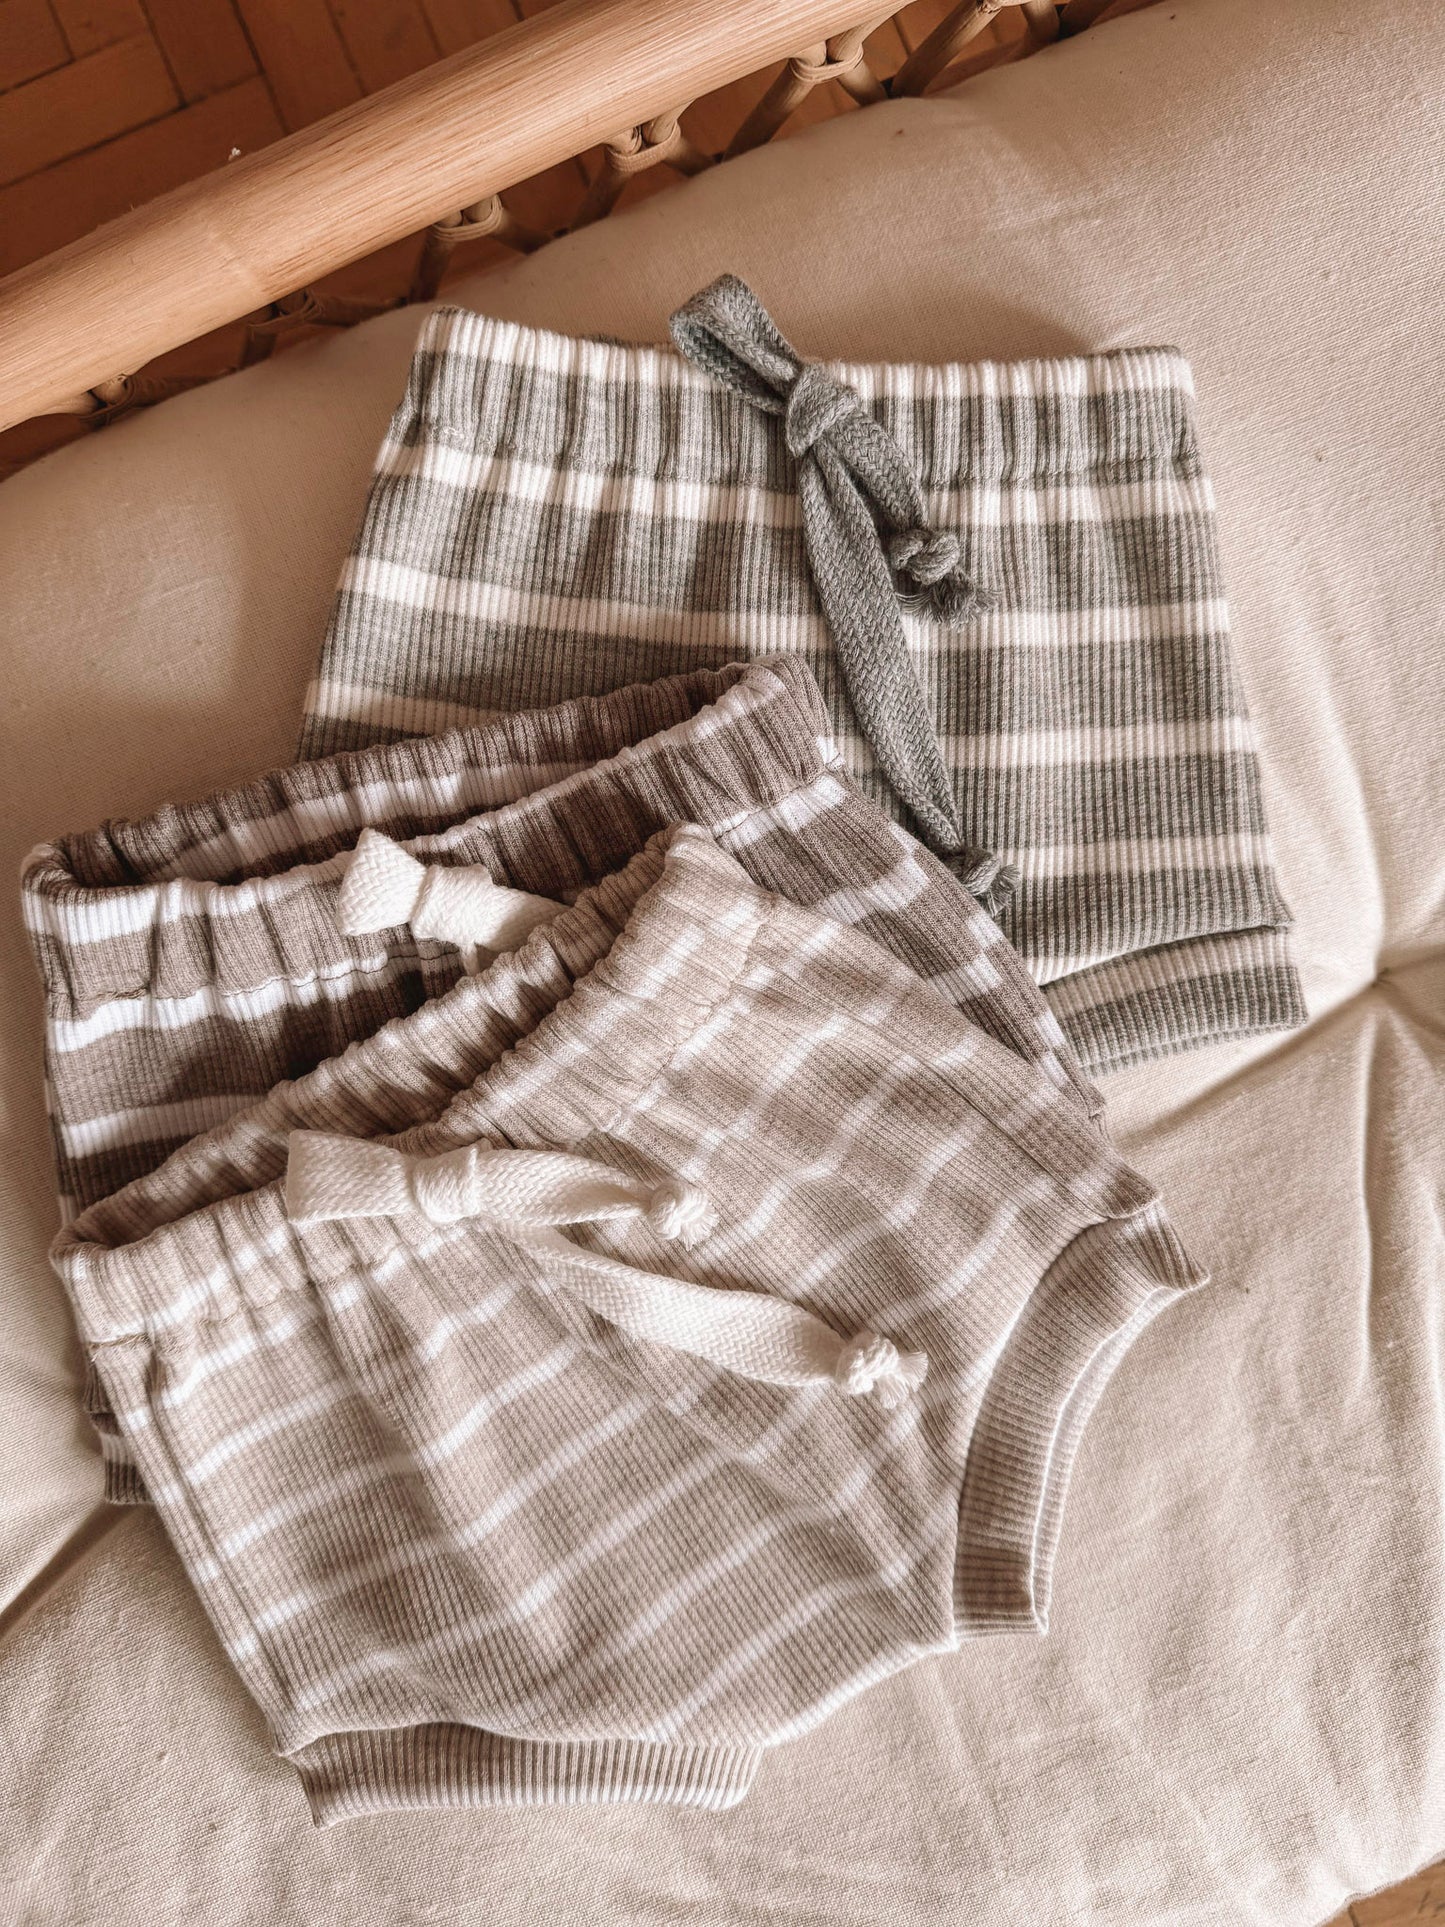 Baby boy shorts / stripes